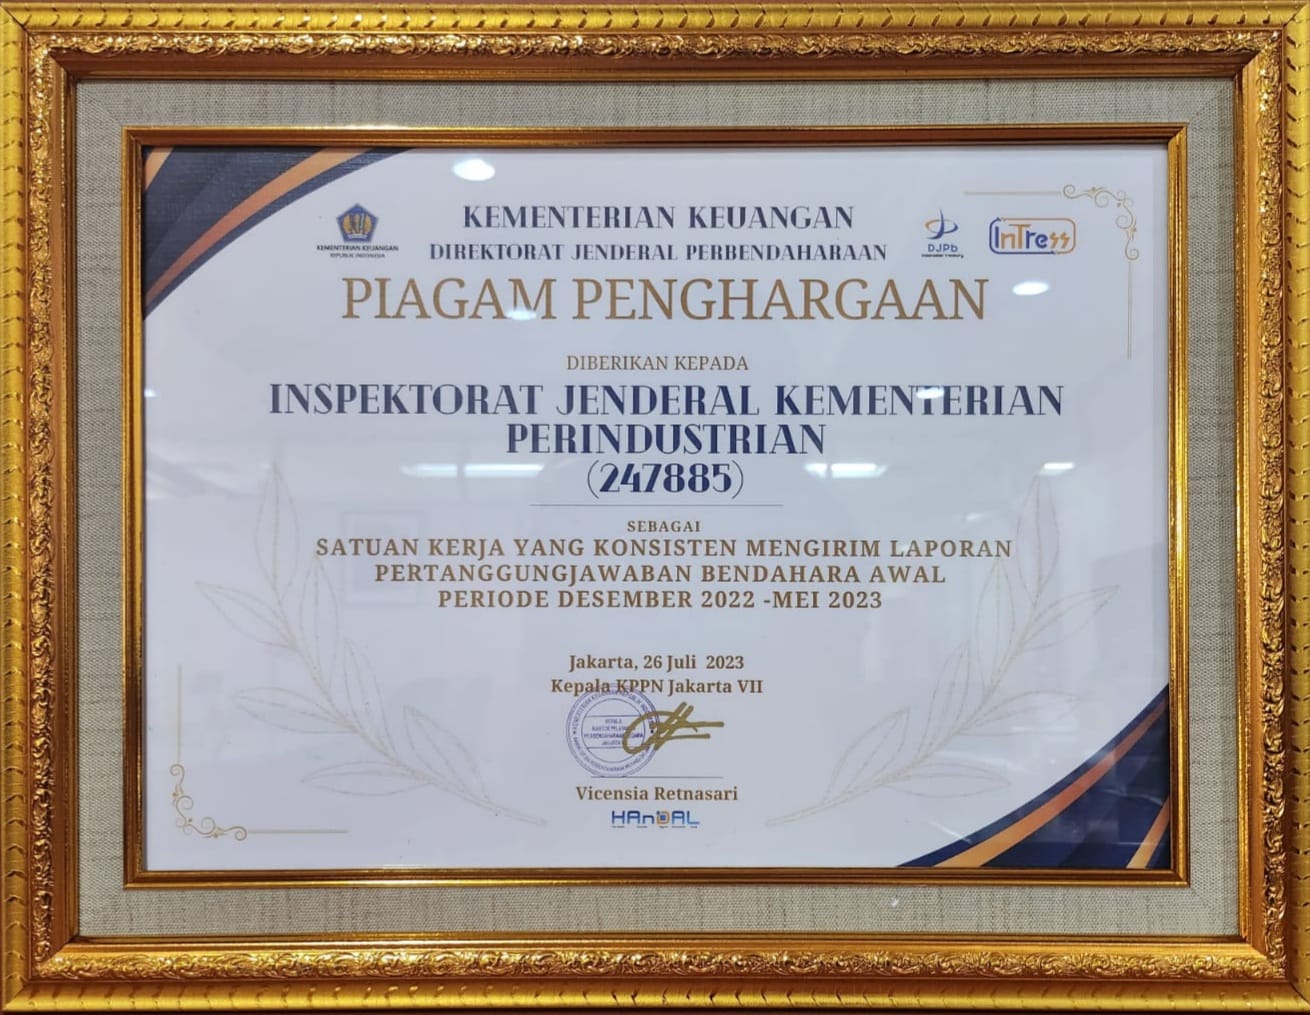 Penghargaan Direktorat Jenderal Perbendaharaan Kementerian Keuangan kepada Inspektorat Jenderal Kementerian Perindustrian